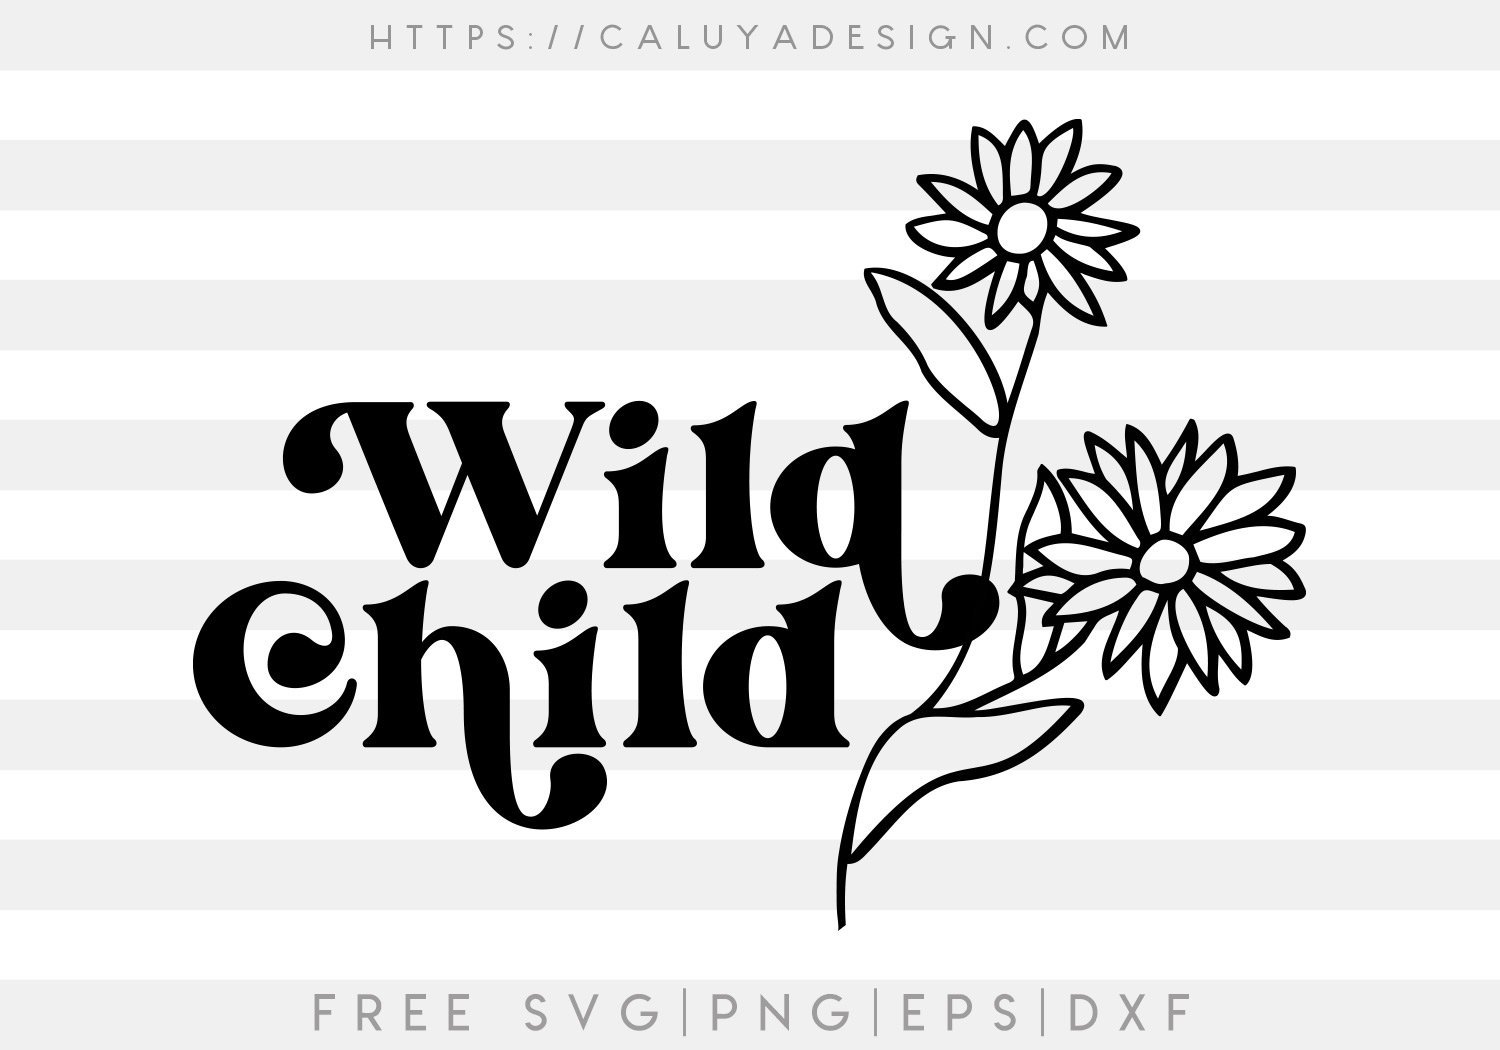 Free Wild Child SVG